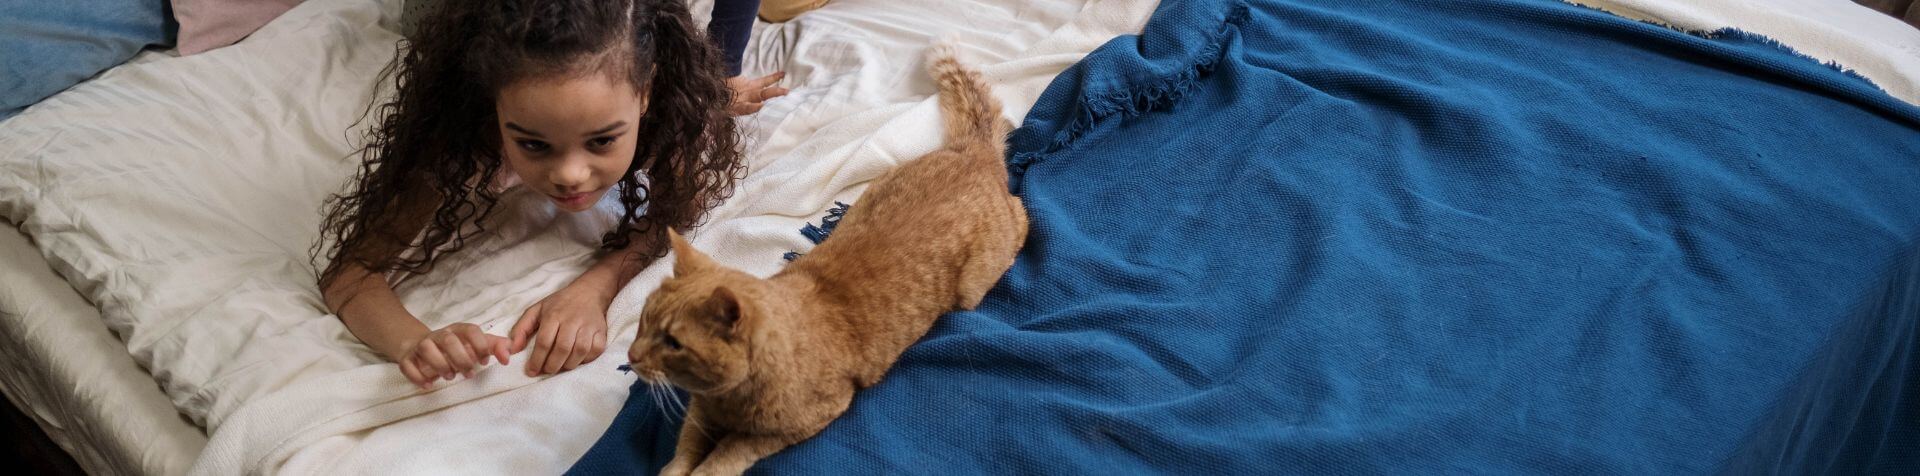 chat et petite fille allongés sur un lit